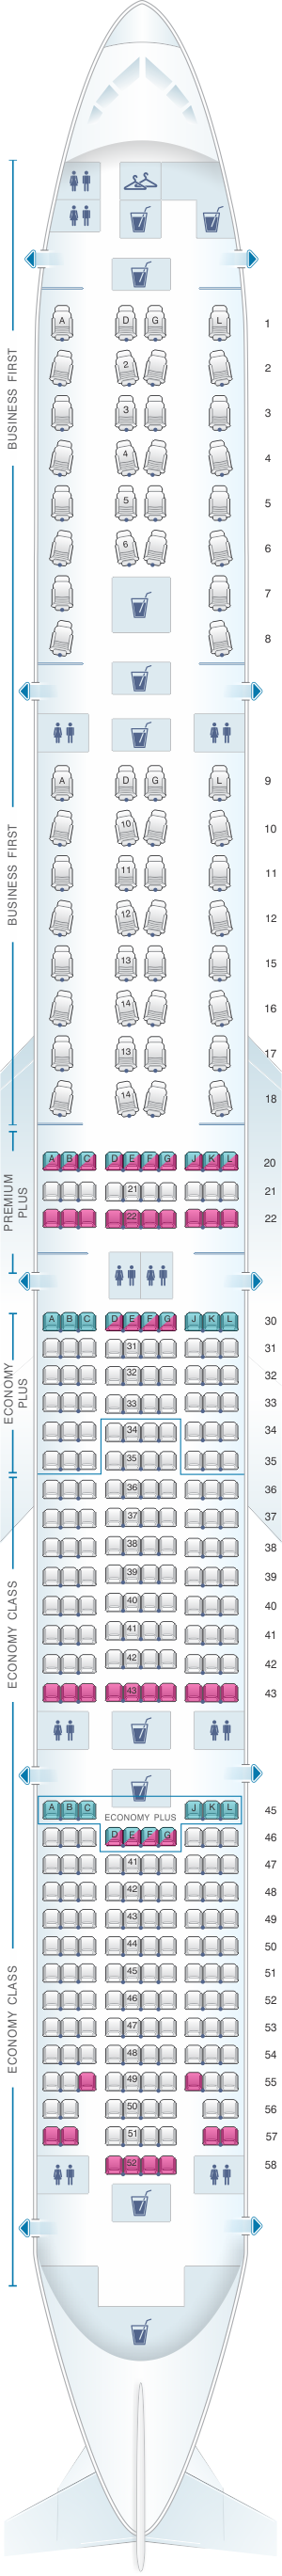 Airbus 777 300er Seating Plan - Infoupdate.org